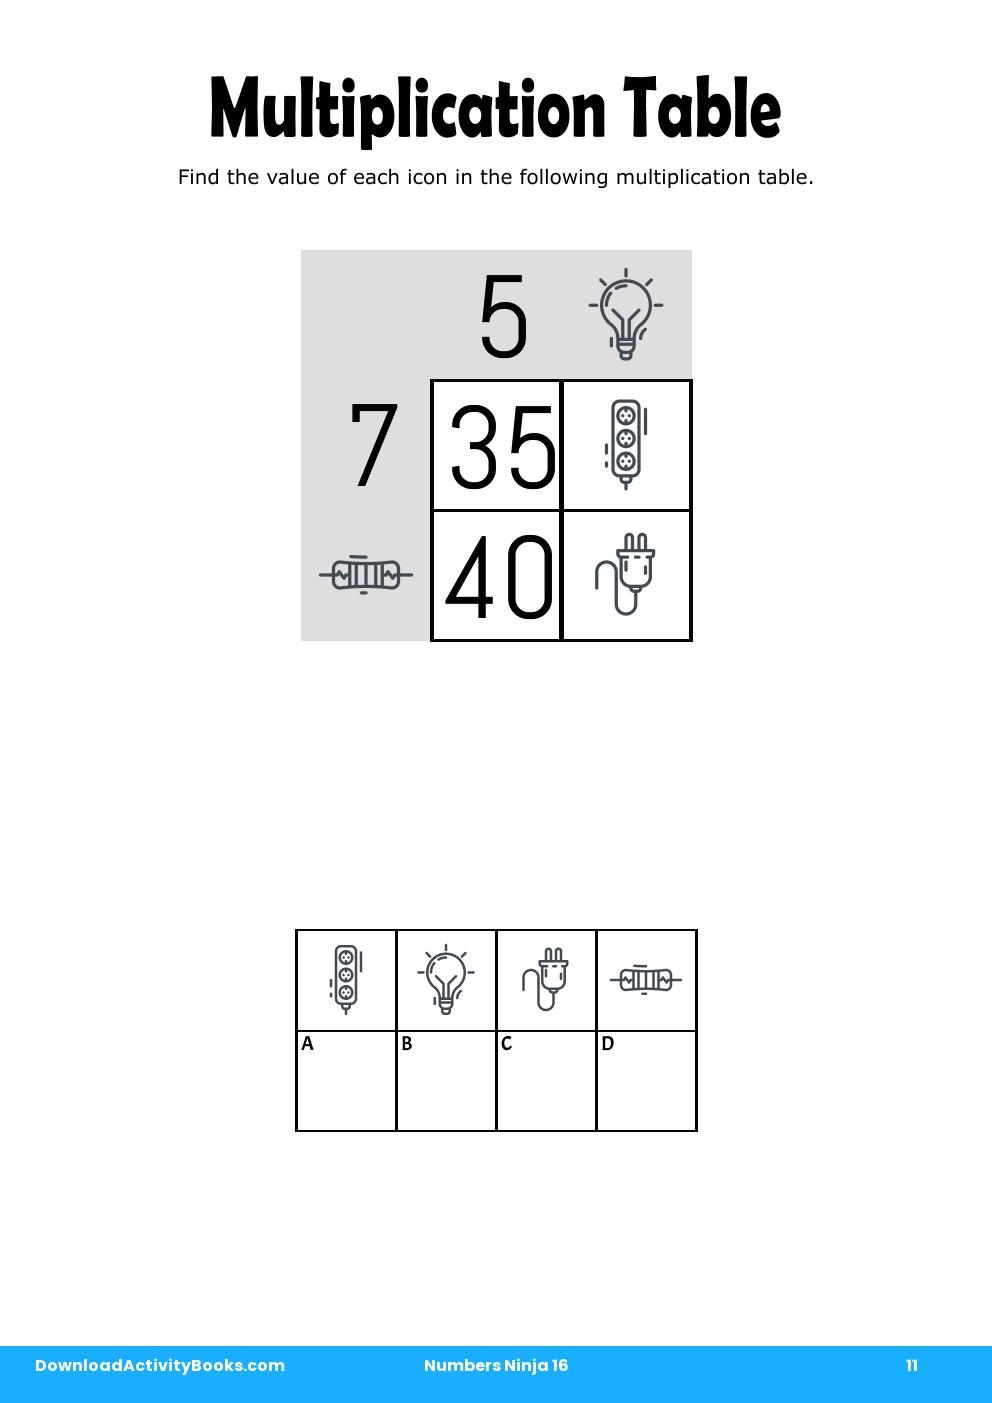 Multiplication Table in Numbers Ninja 16